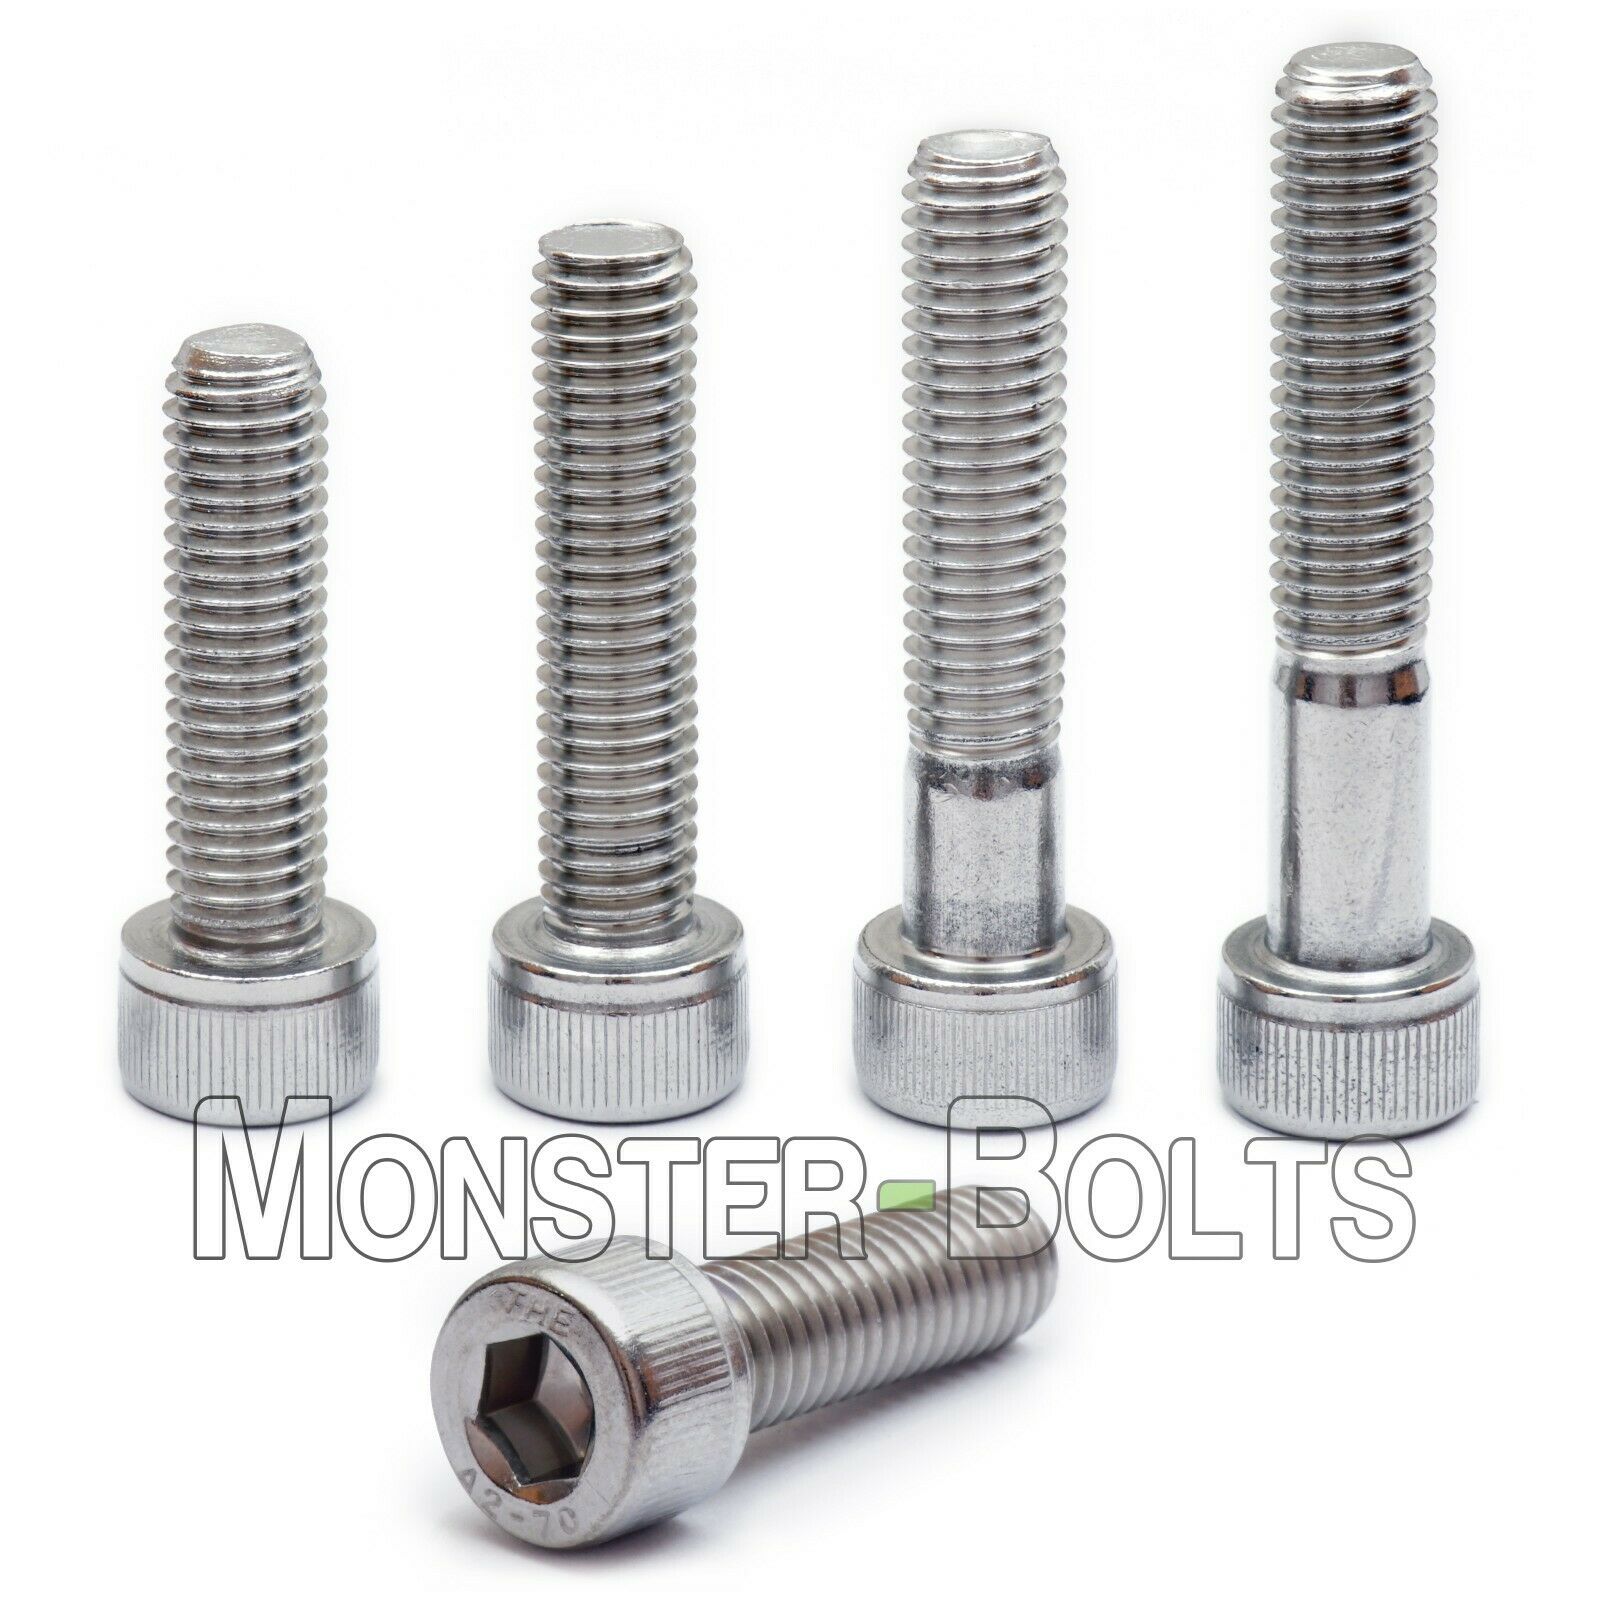 M8 Stainless Steel Socket Head Cap Screws, A2 / 18-8 Metric Din 912, 1.25 Coarse